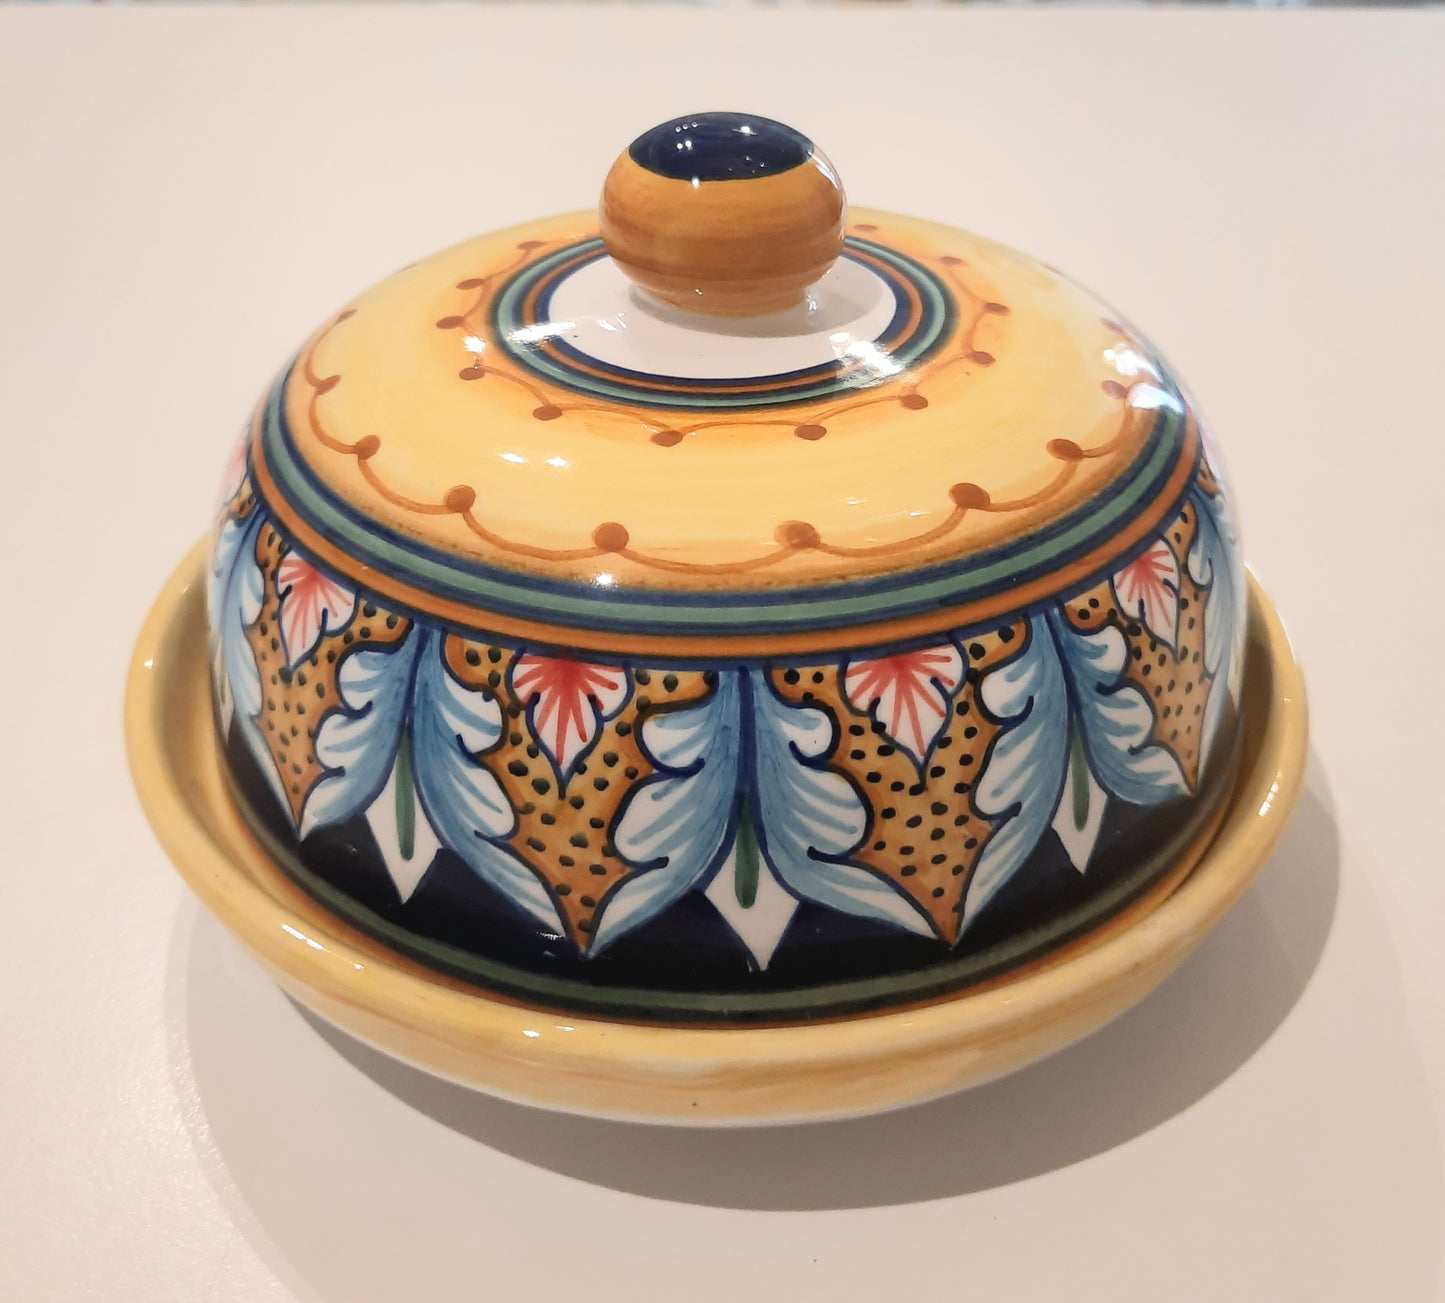 Burriera in ceramica dipinta a mano rotonda. Ideale per colorare le vostre tavole imbandite.